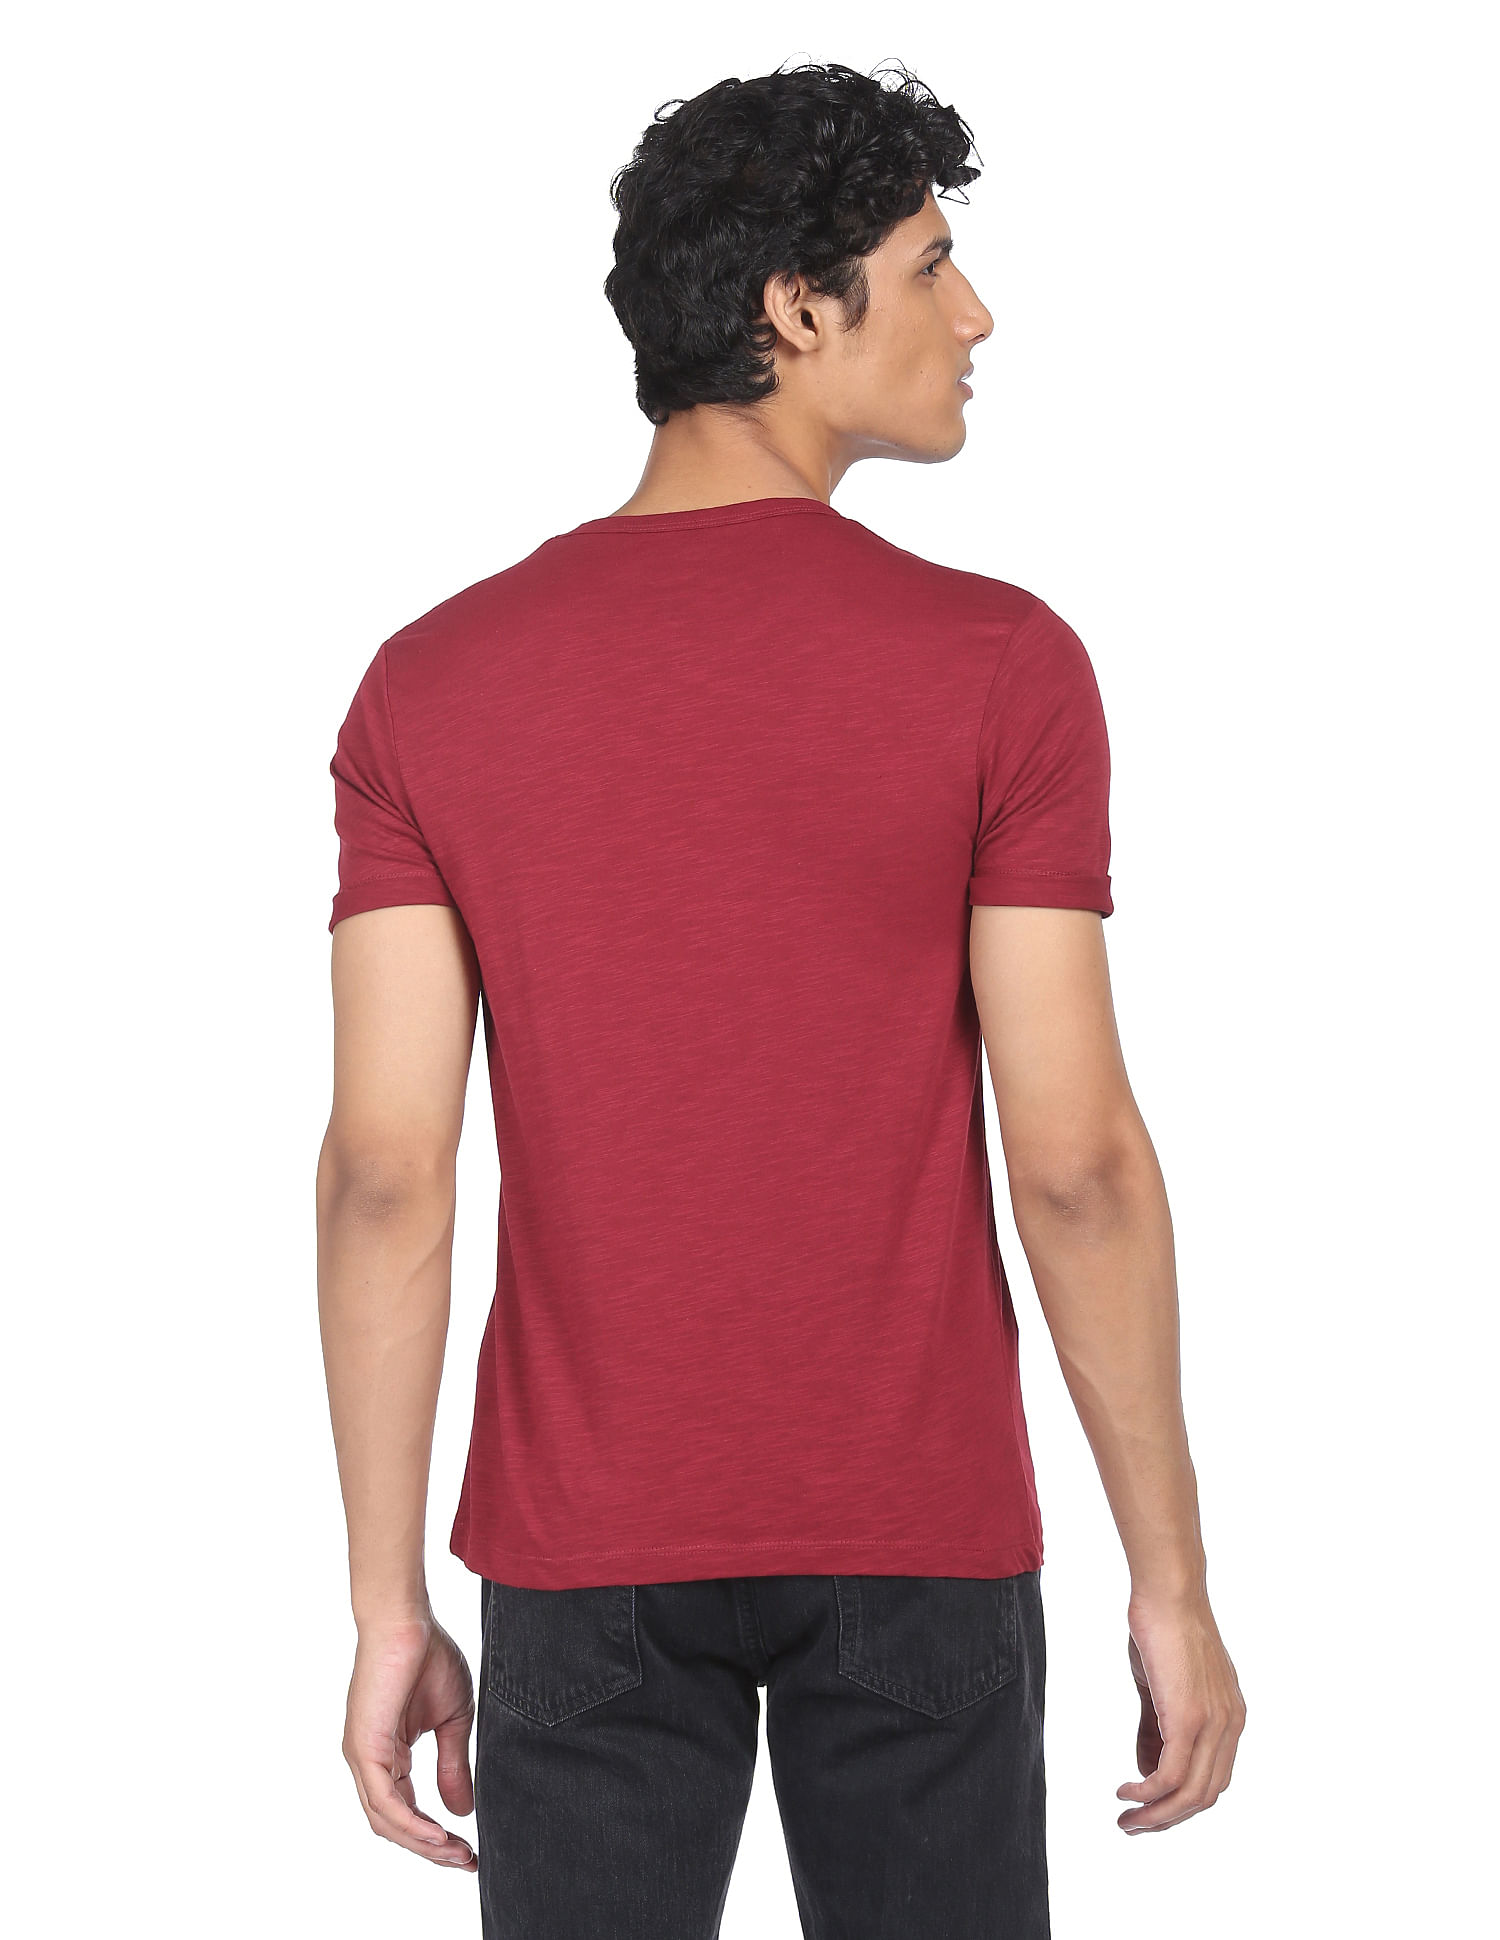 Stylish Redbat Supply T-Shirt for Men